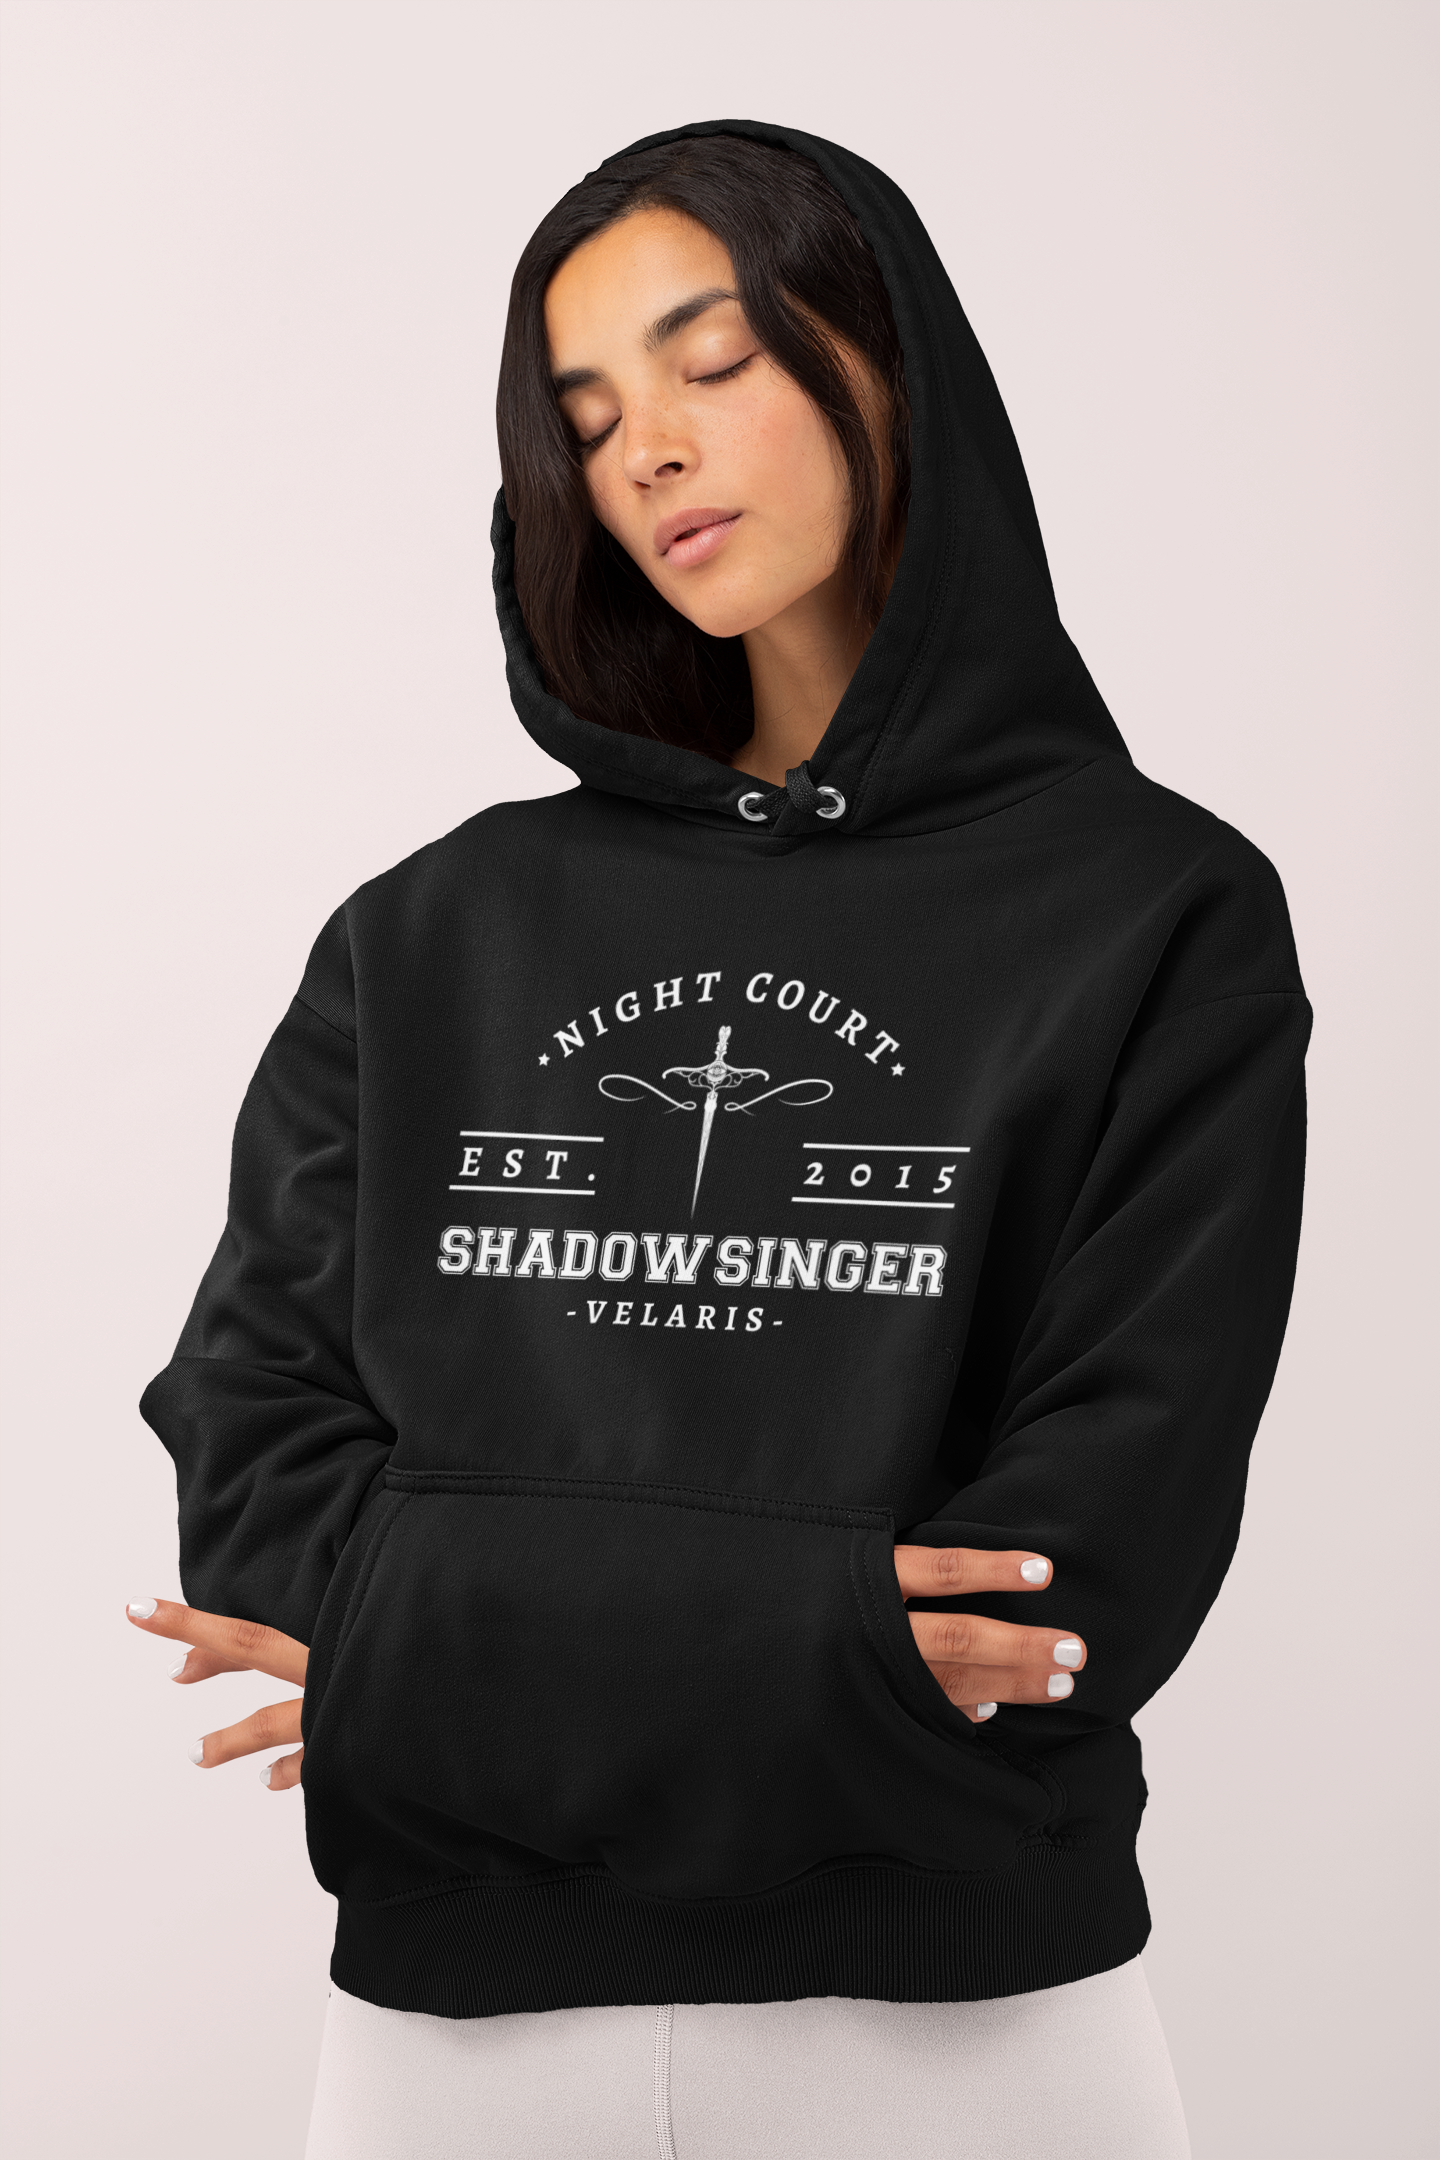 Shadowsinger ACOTAR Hooded Sweatshirt